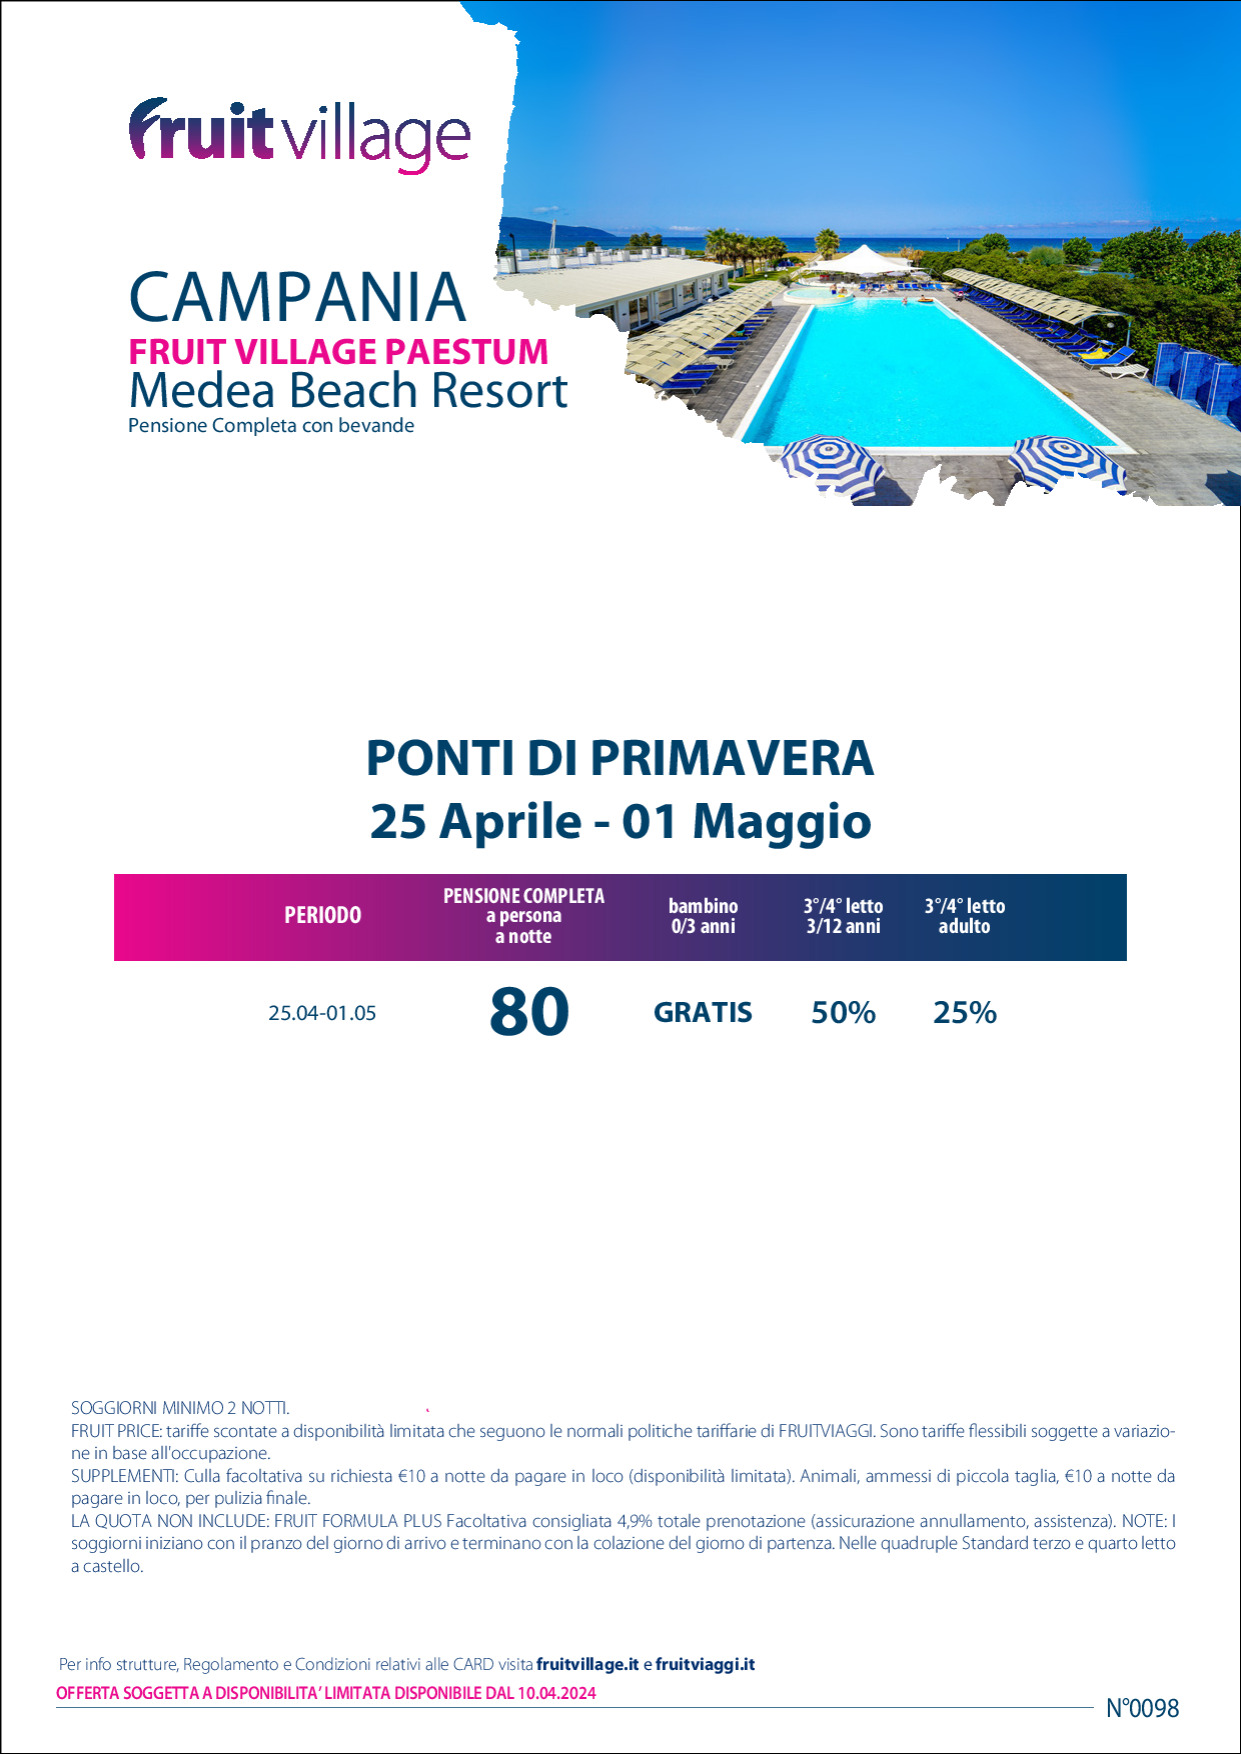 FRUIT VILLAGE Paestum Medea beach Resort - Ponti di Primavera